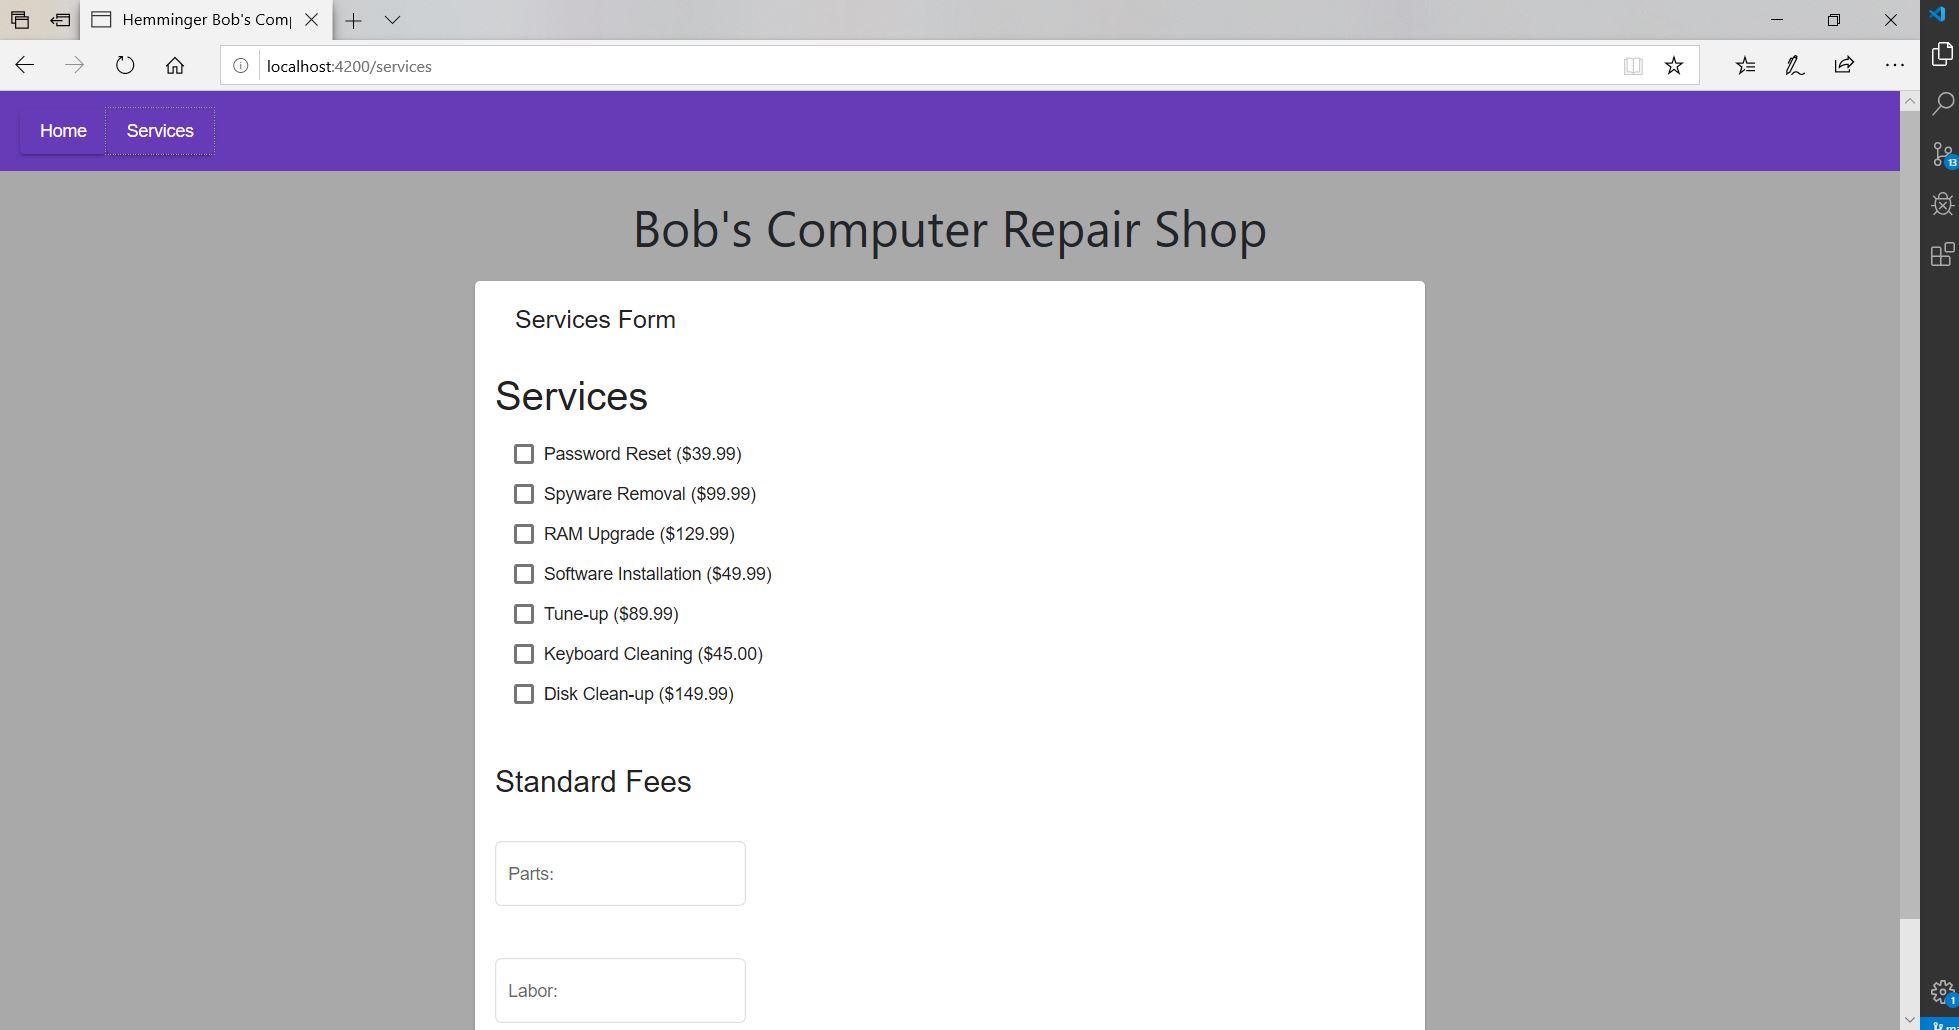 Bob's Computer Repair Shop Project